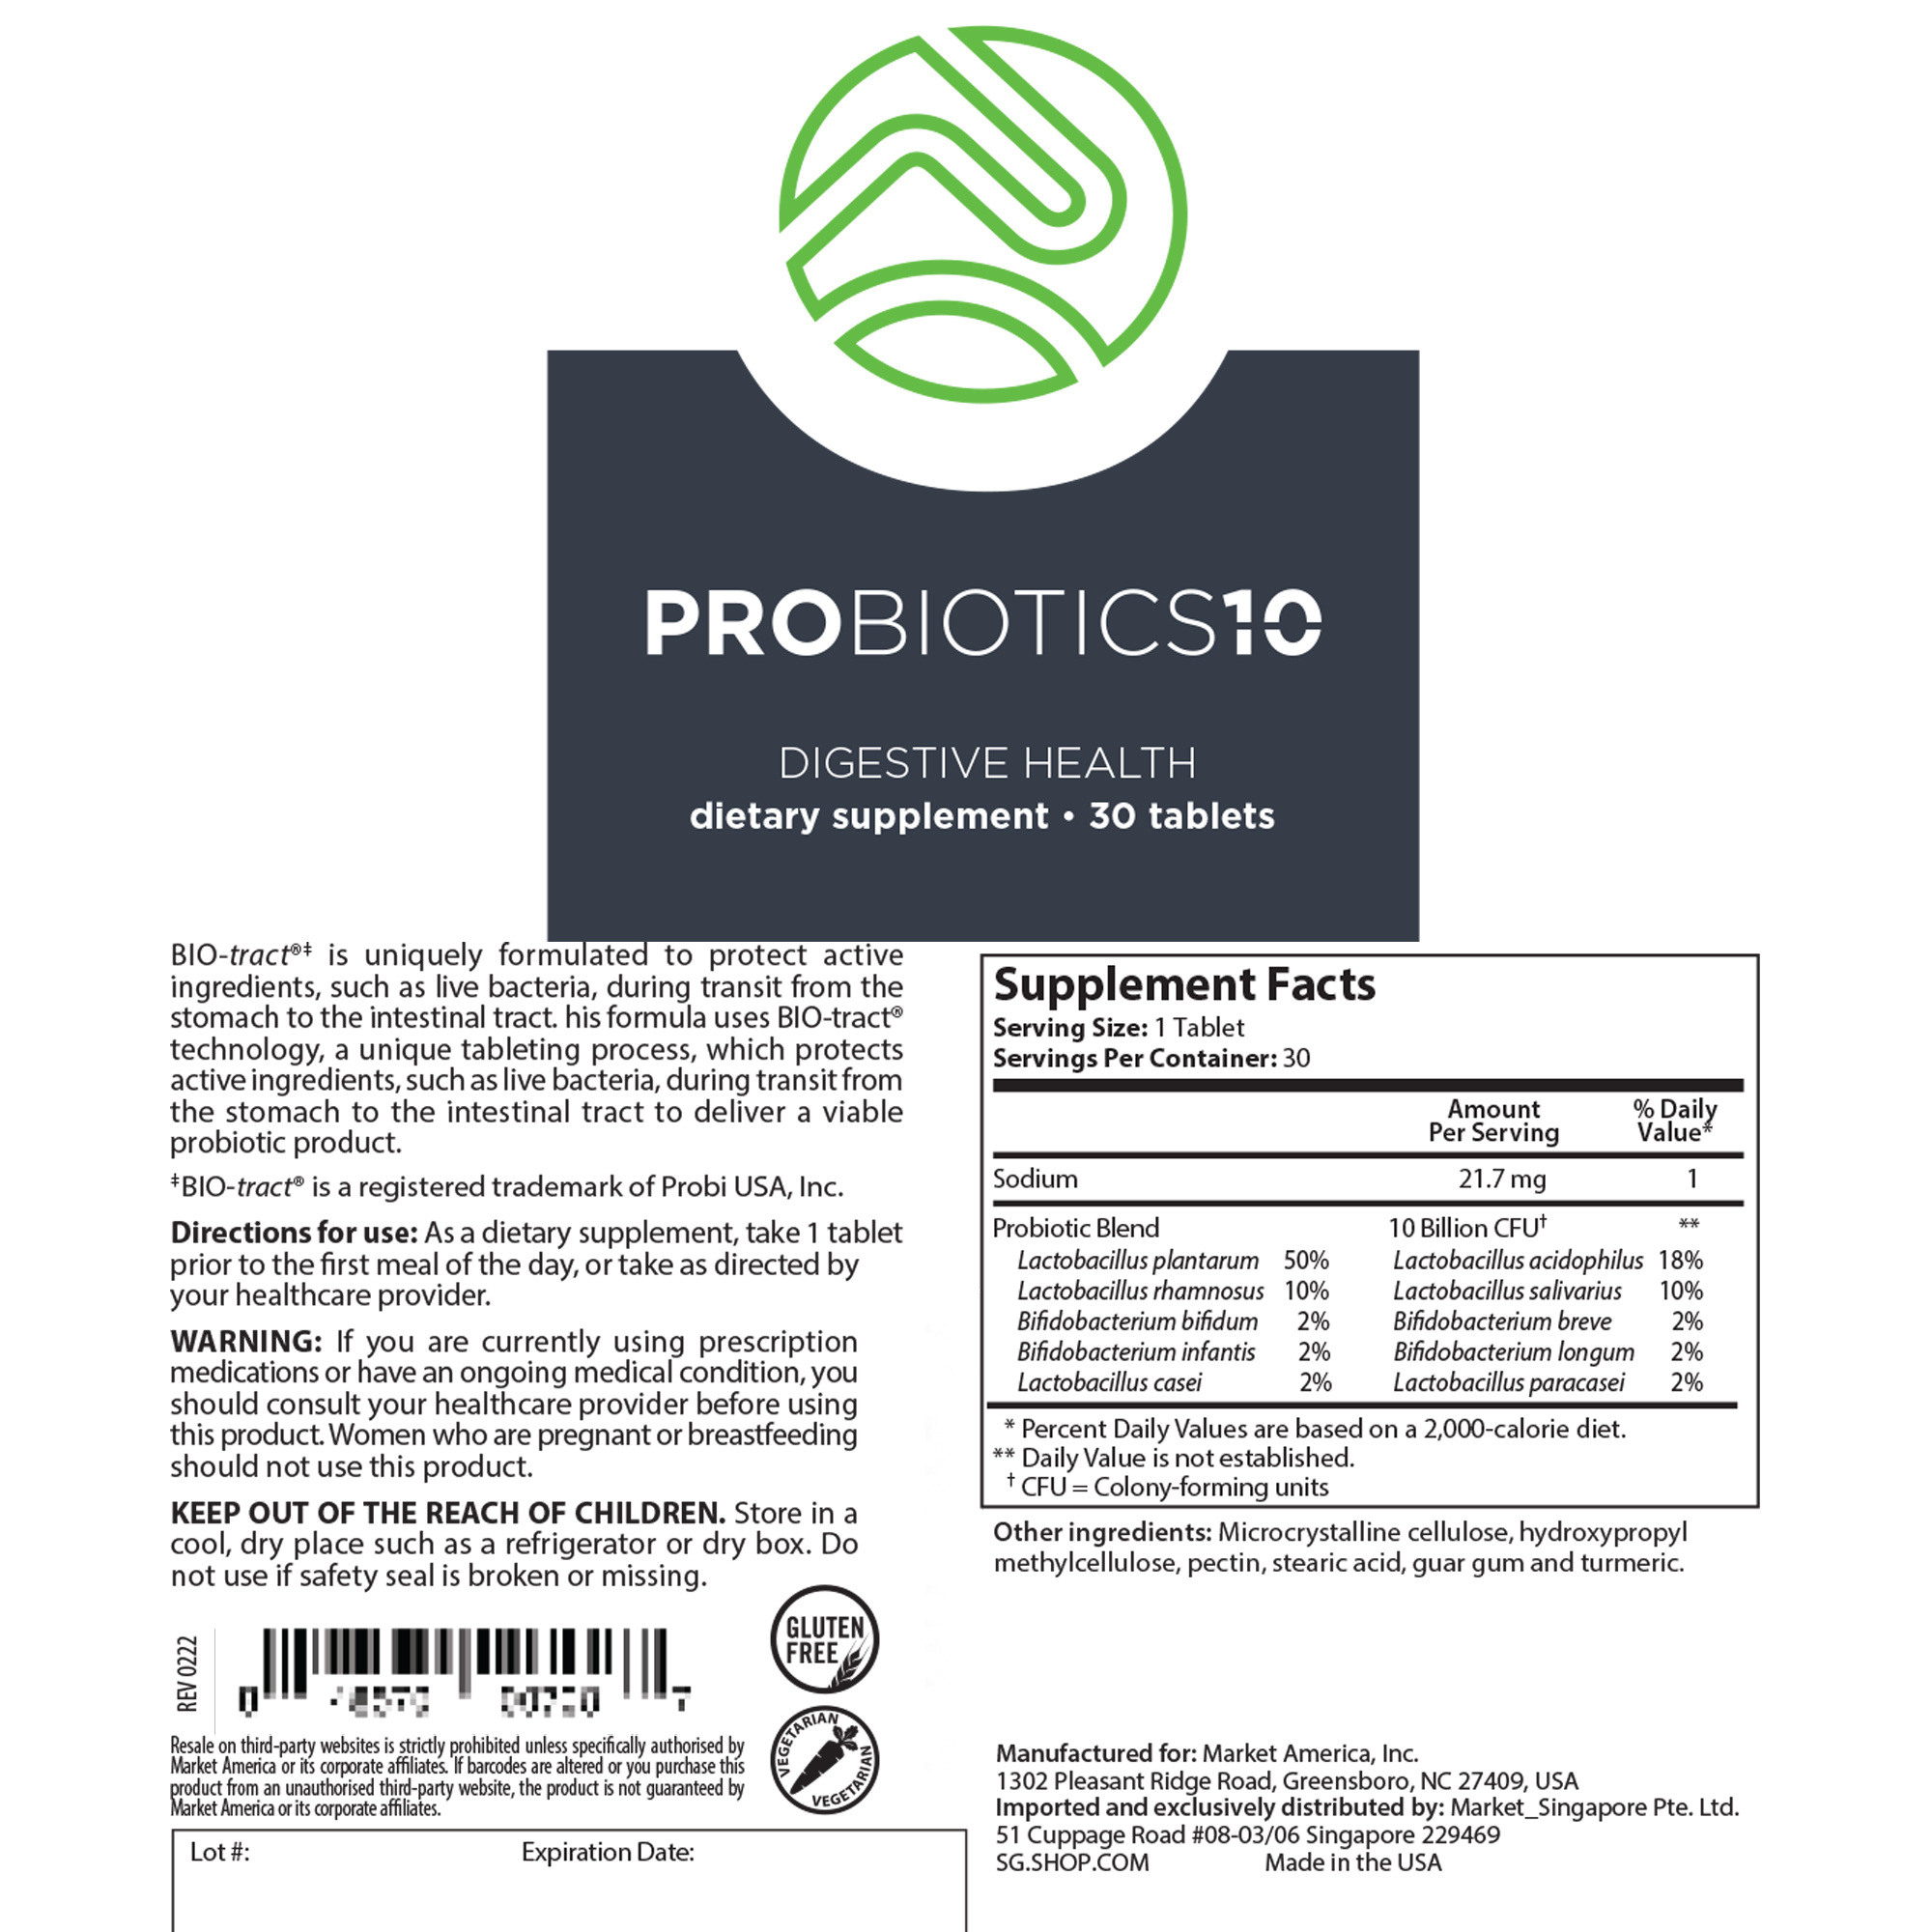 Probiotics-10 alternate image